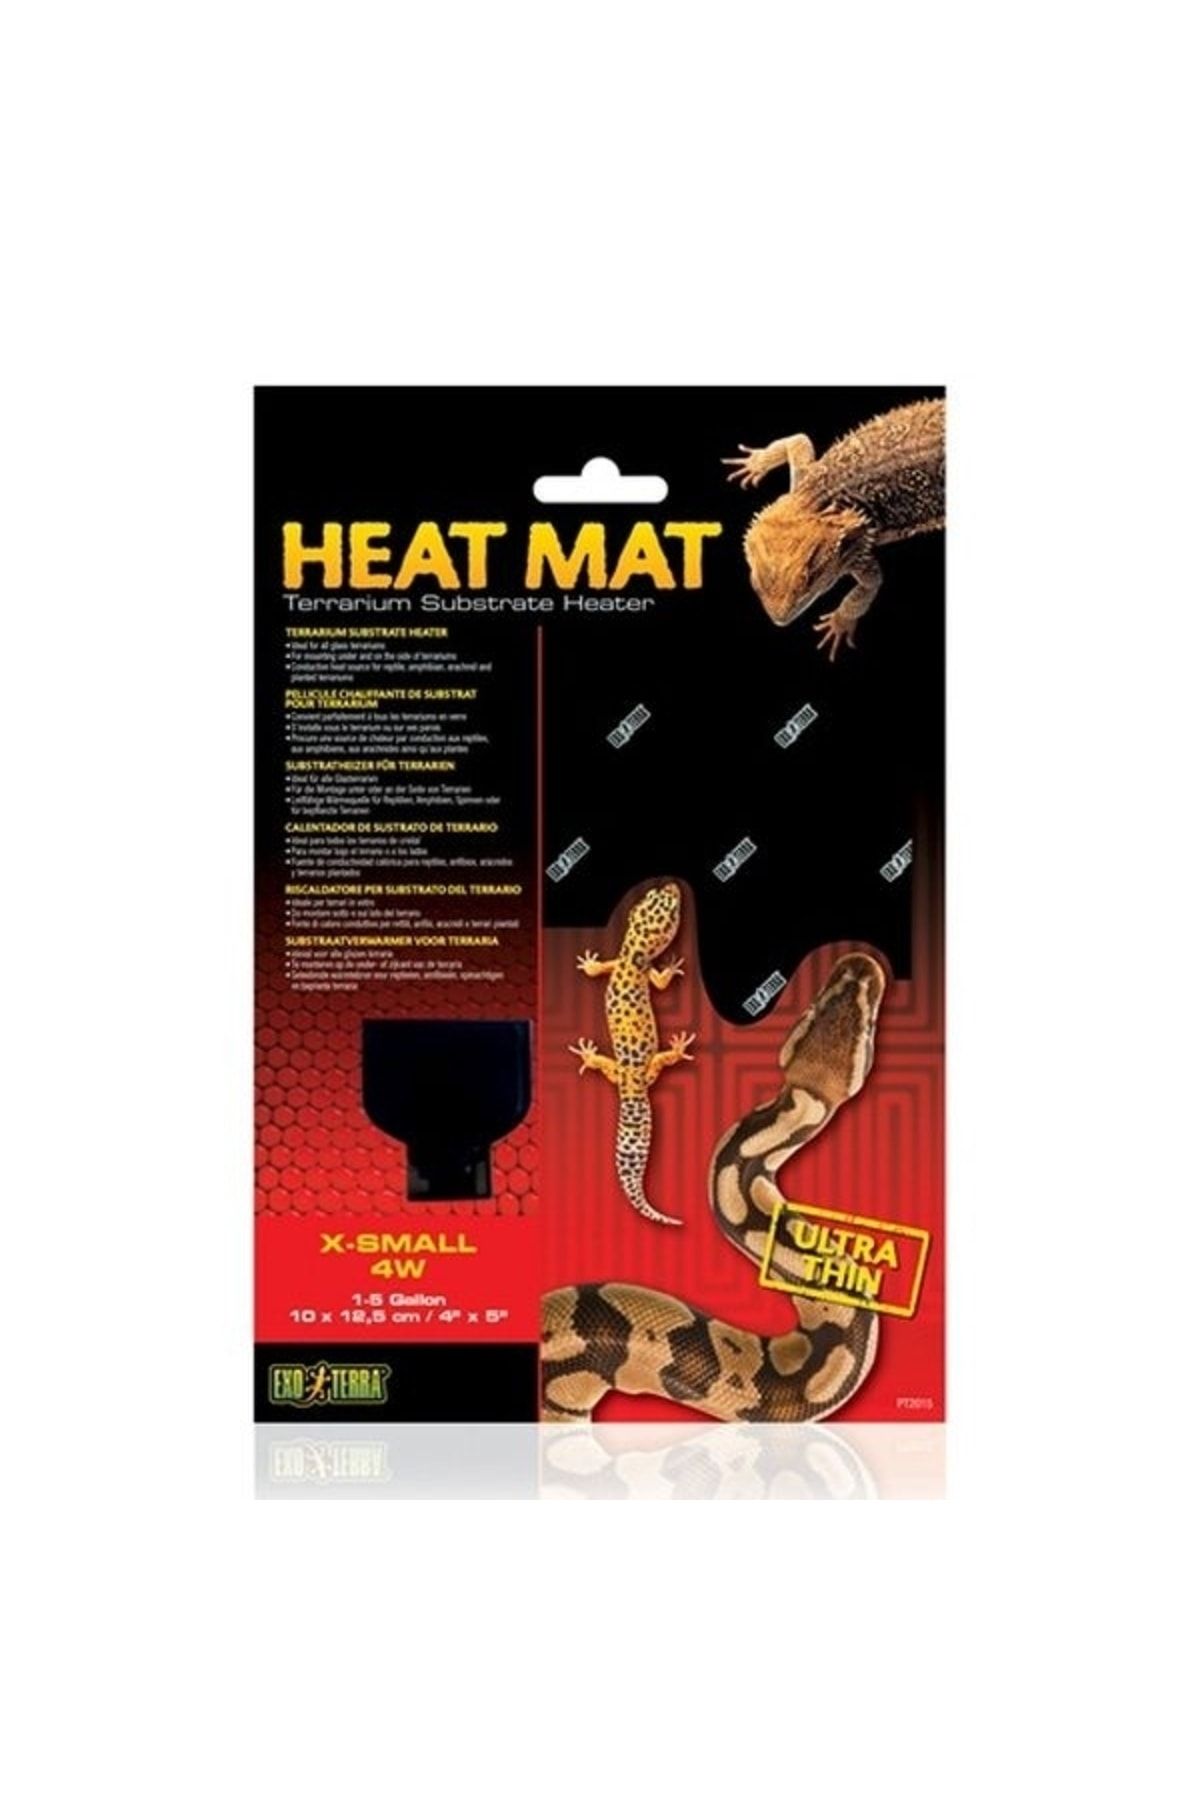 Genel Markalar Sürüngen Heat Mat Xsmall 4W